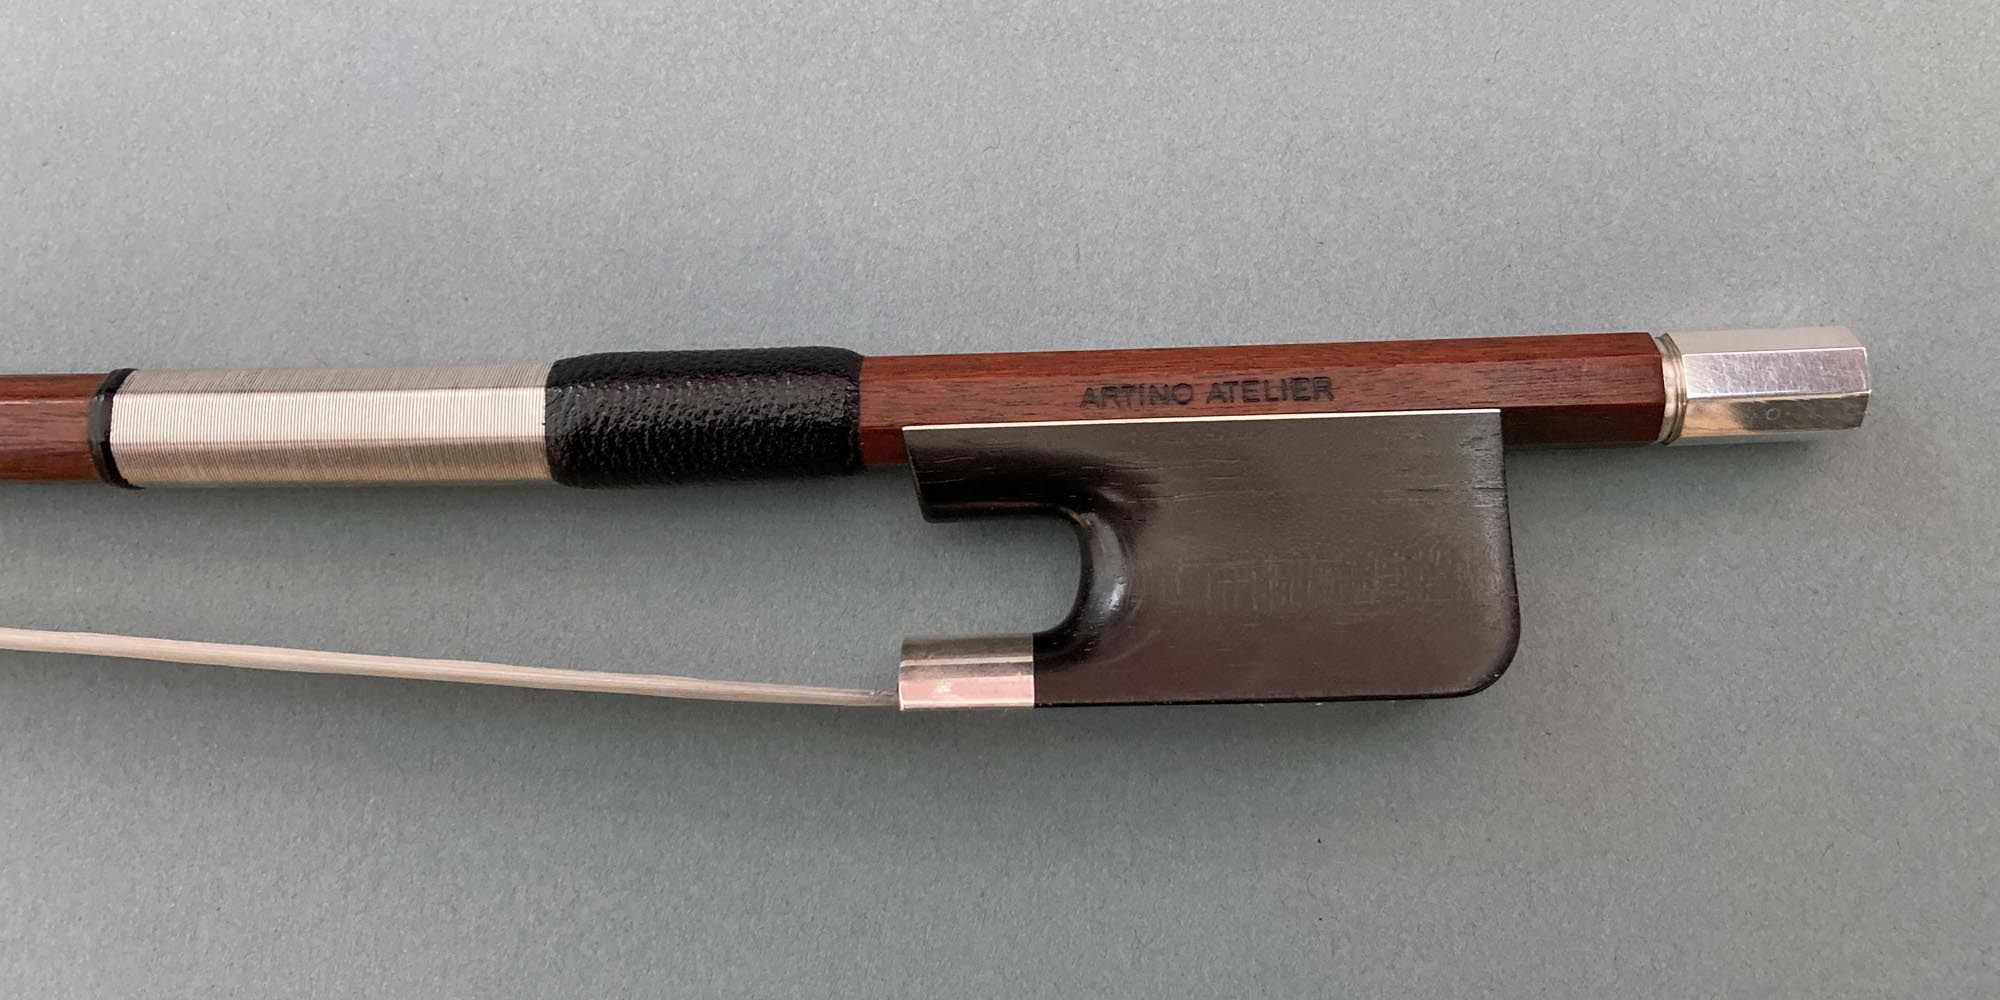 Artino Atelier model 358 - Cello Bow